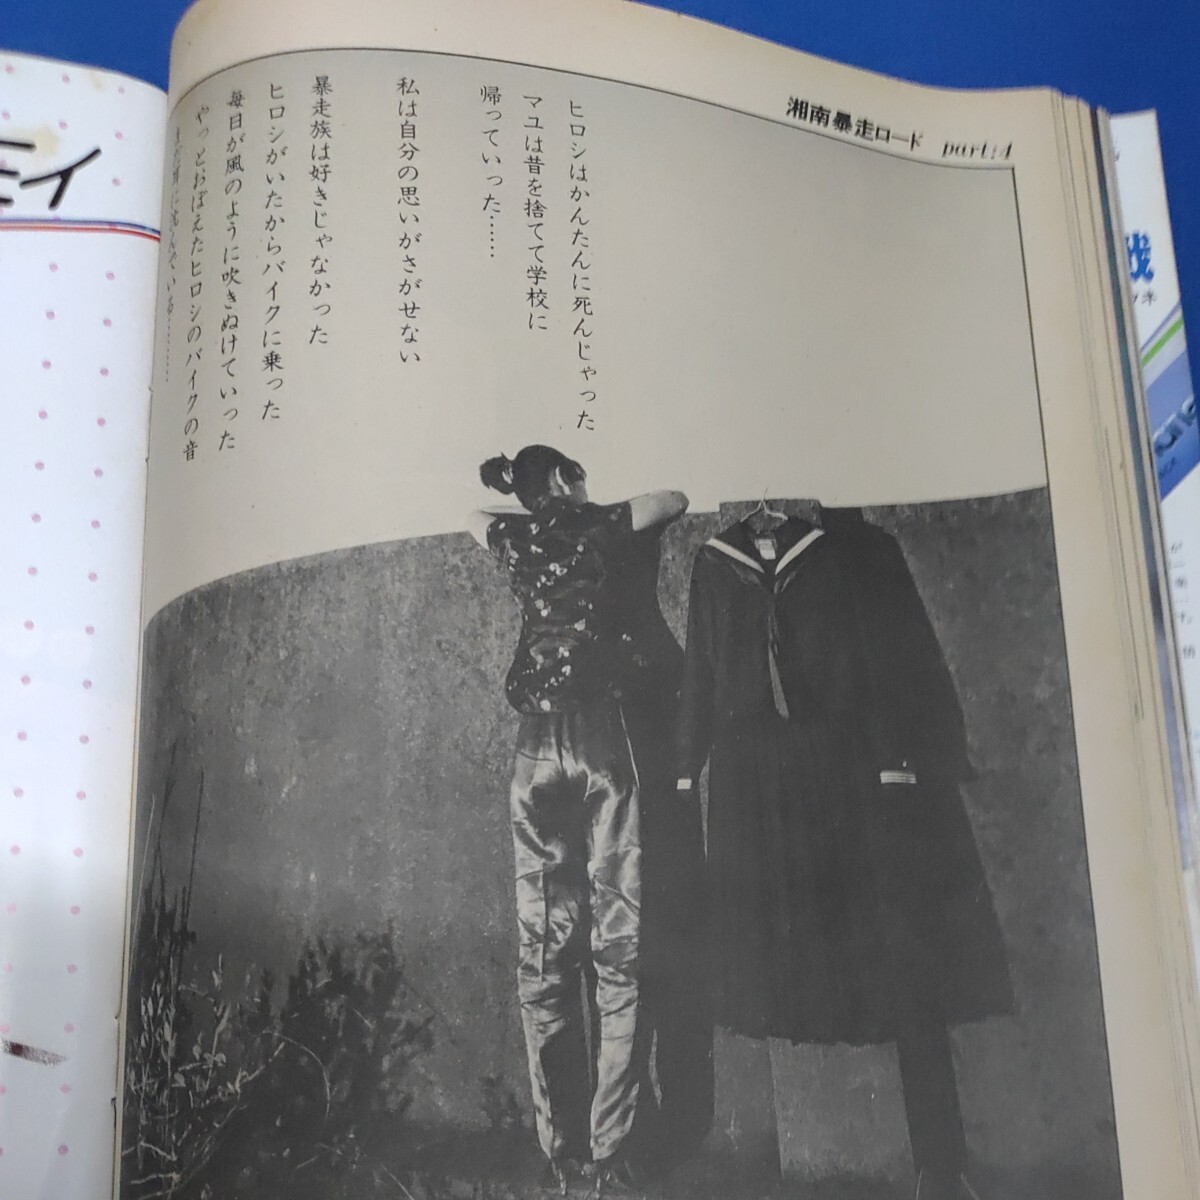 ギャルズライフ GALS LIFE 1981年07月号 男のコを体で誘惑 横浜銀蝿名古屋コンサート 湯田伸子 バスタイムのシェイプアップの画像5